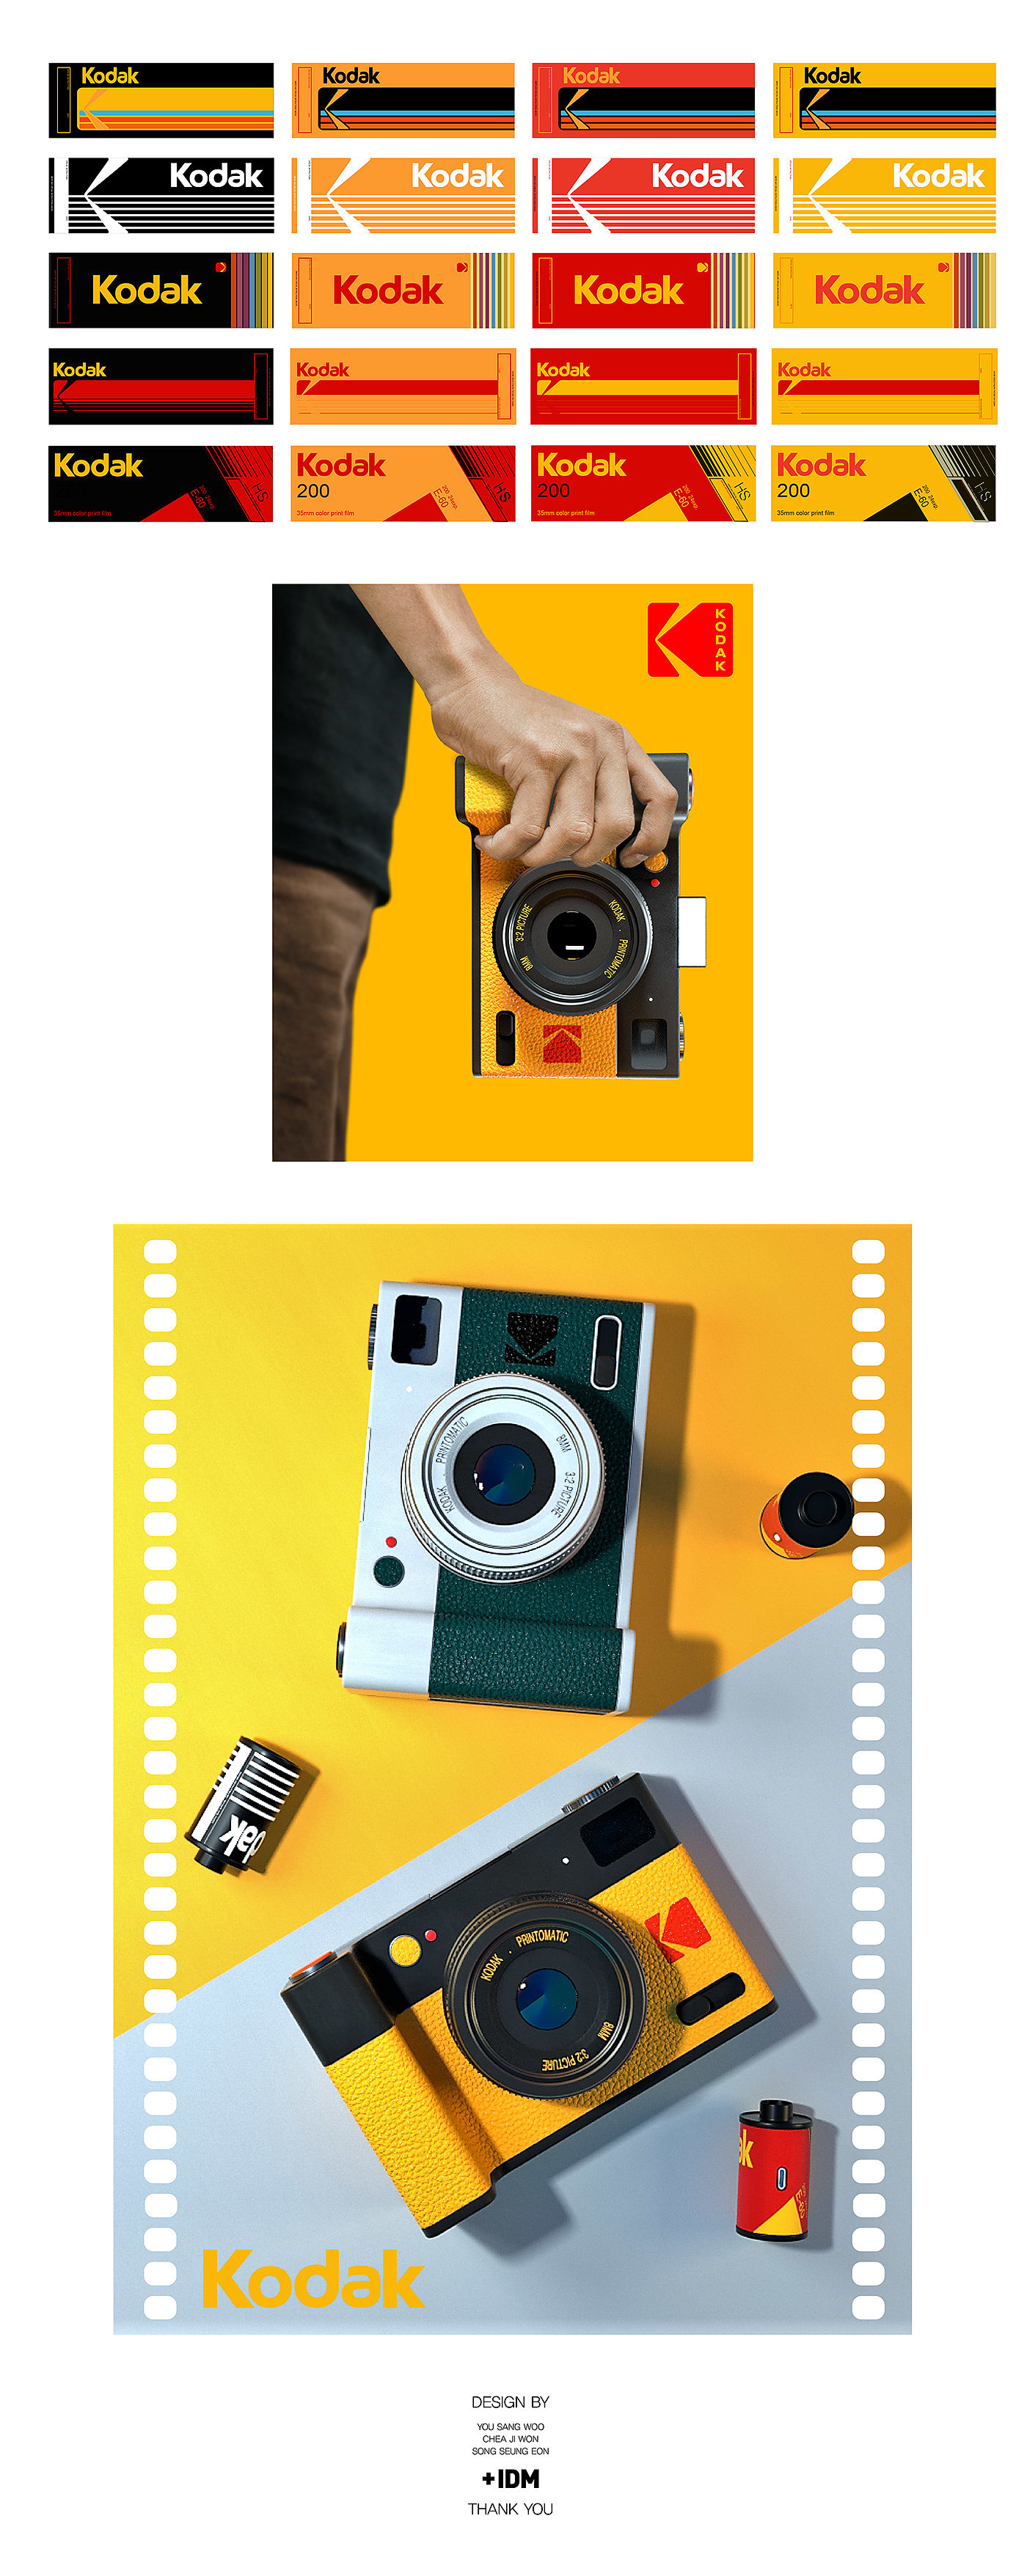 相机，柯达，KODAK，胶片相机，